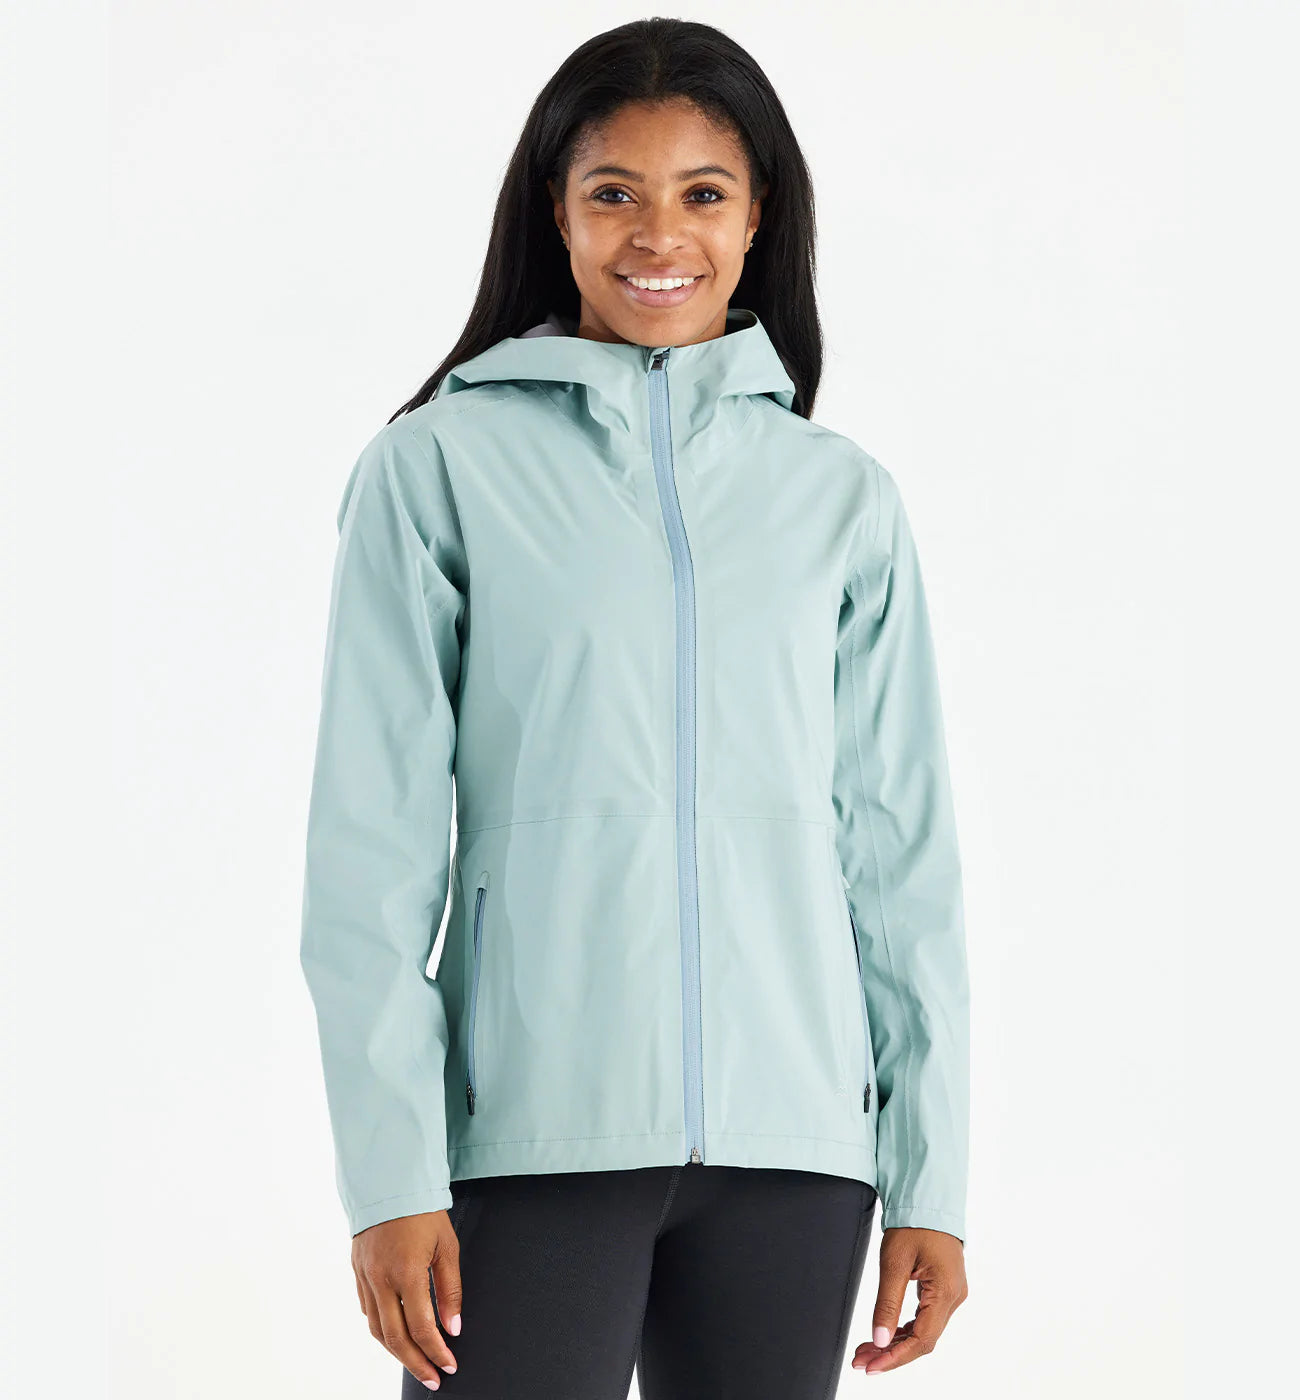 Women's Rain (Waterproof) Jackets